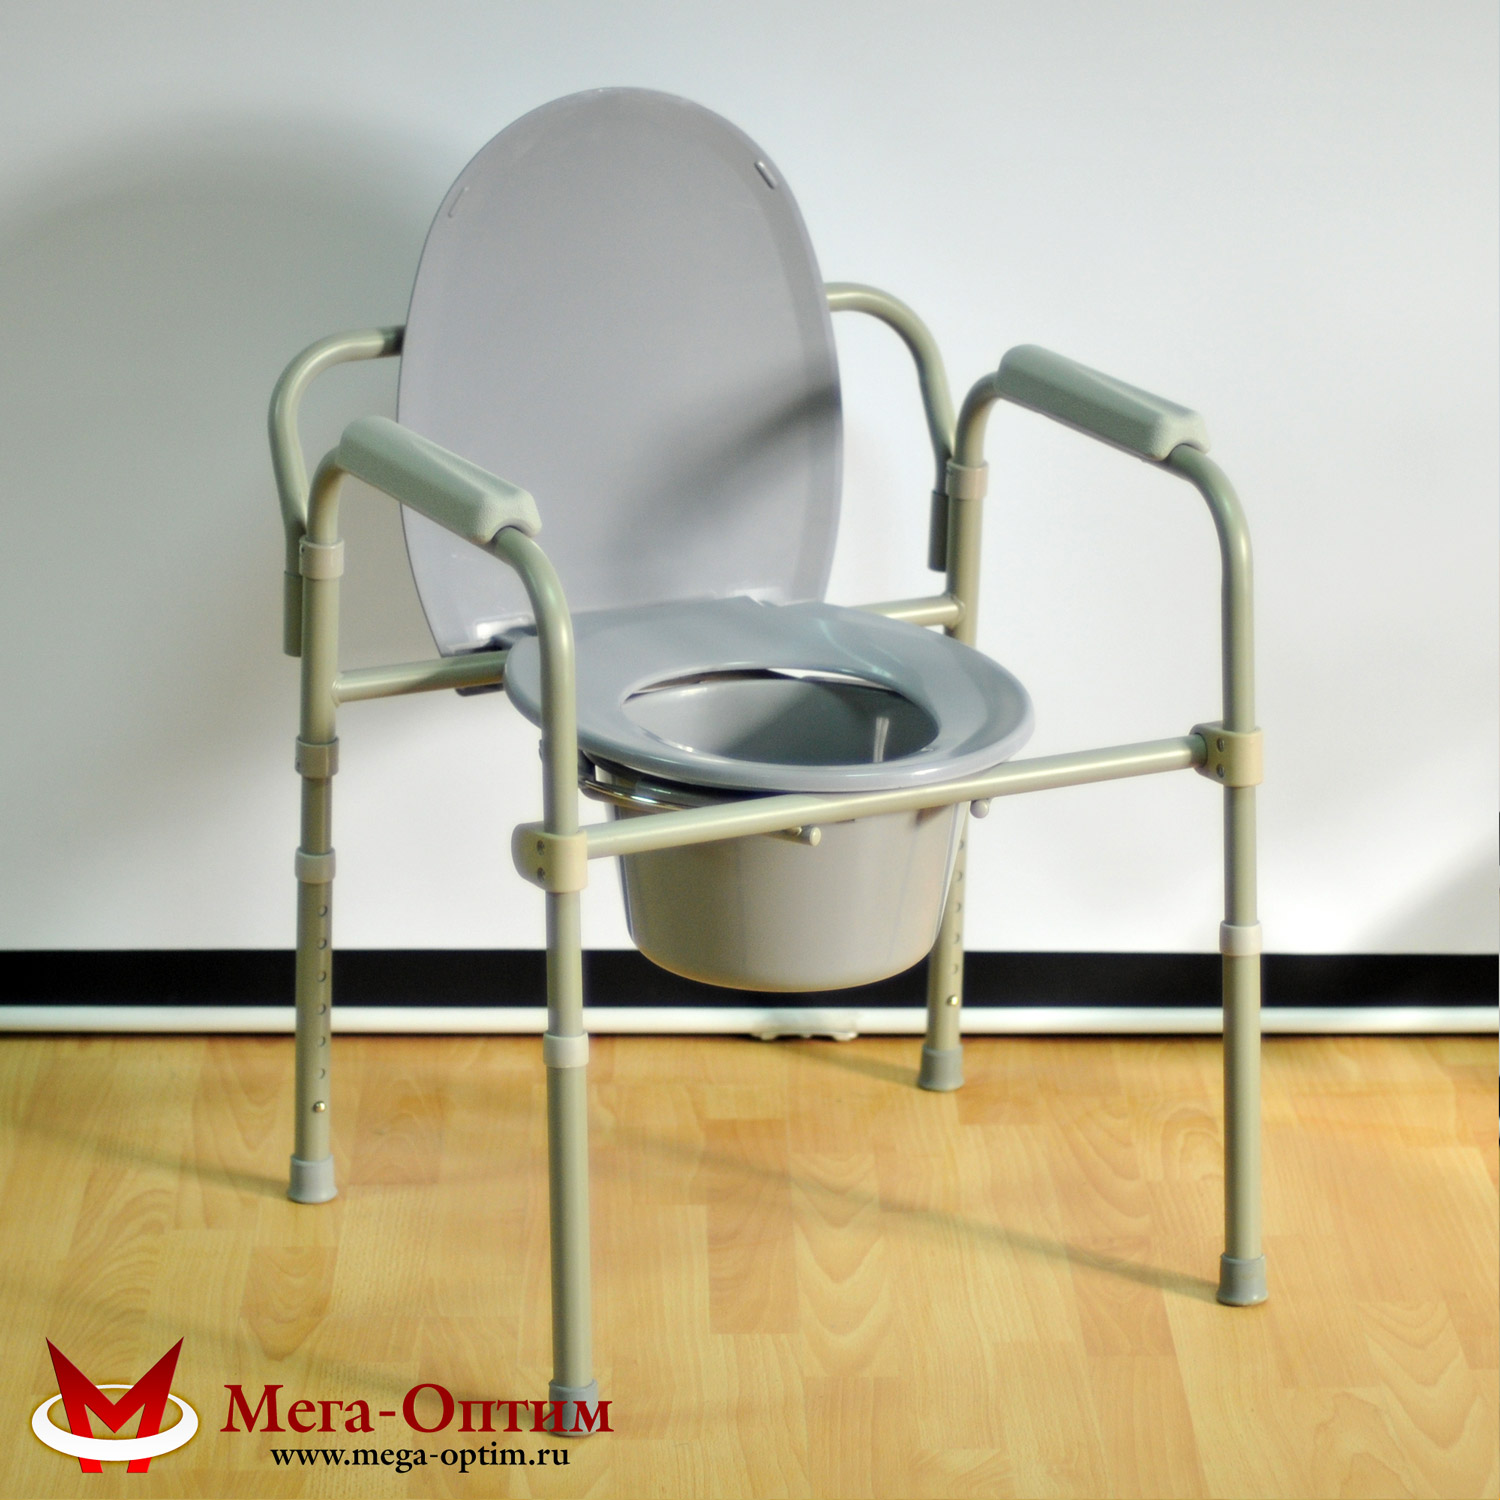 Кресло-стул с санитарным оснащением HMP 7210 A МЕГА-ОПТИМ 